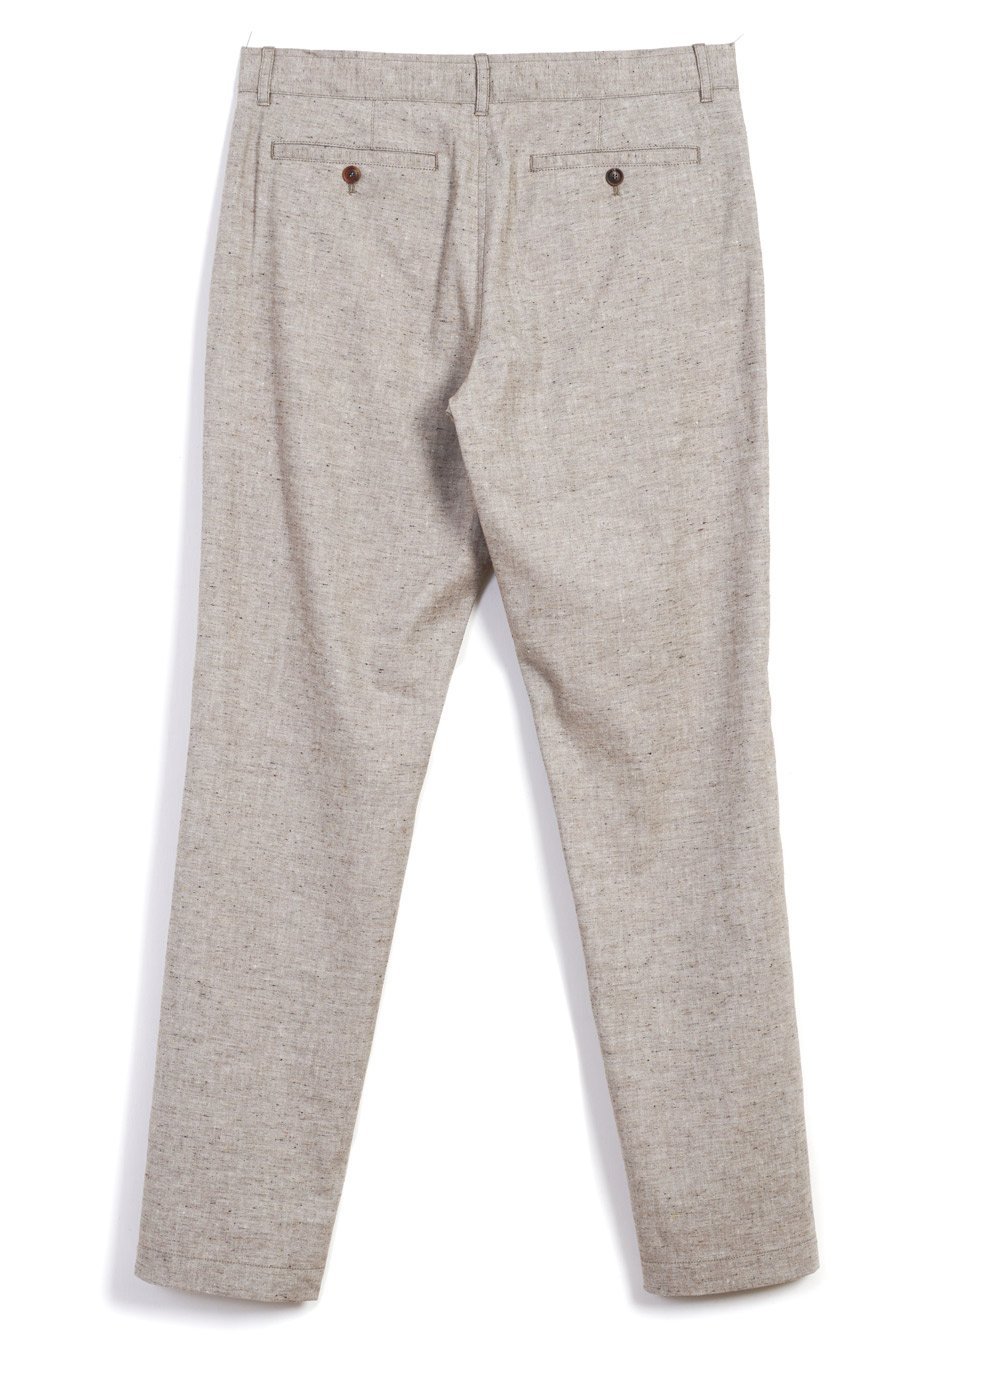 Hansen Garments FRED | Regular Fit Trousers | Beach